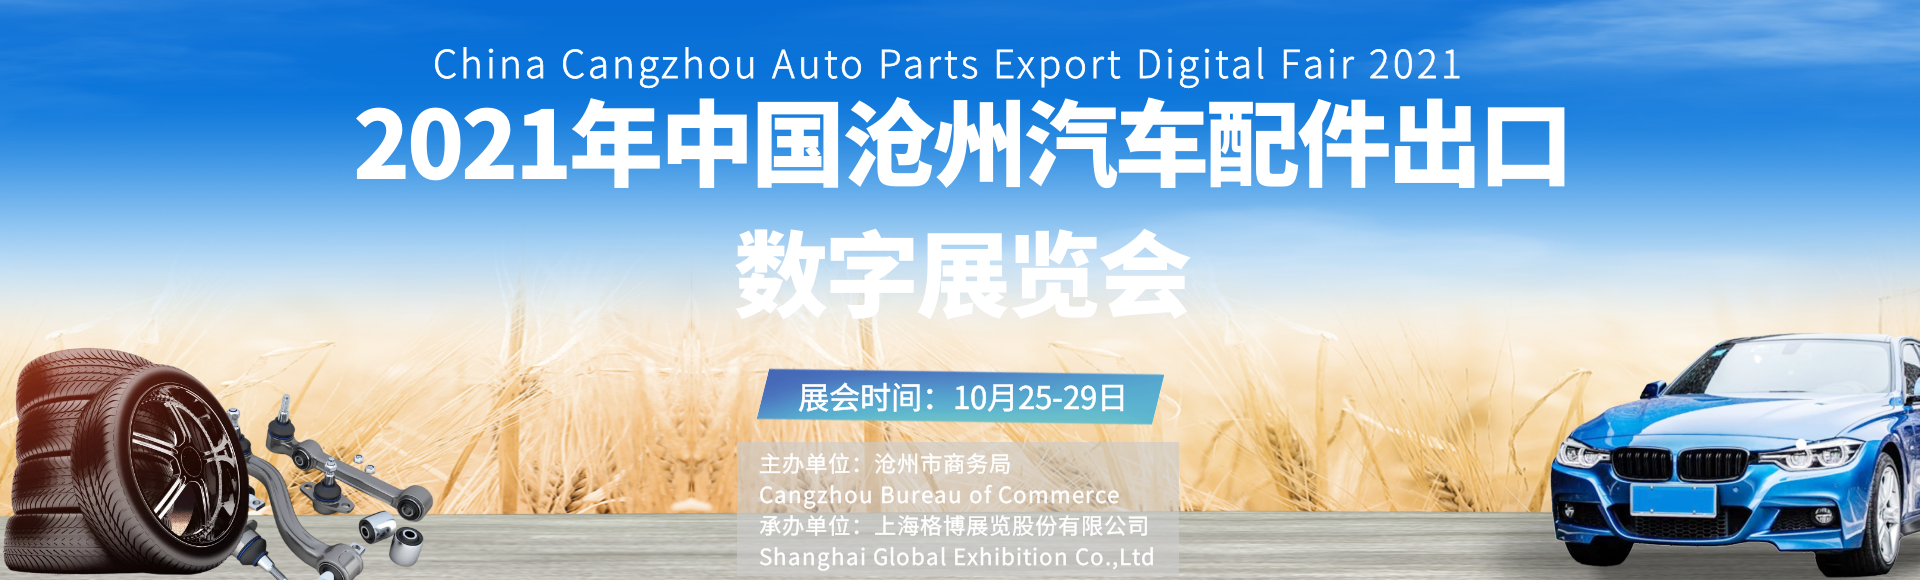 2021年中国沧州<font color=#ff0000>汽车</font>配件出口数字展览会即将启幕